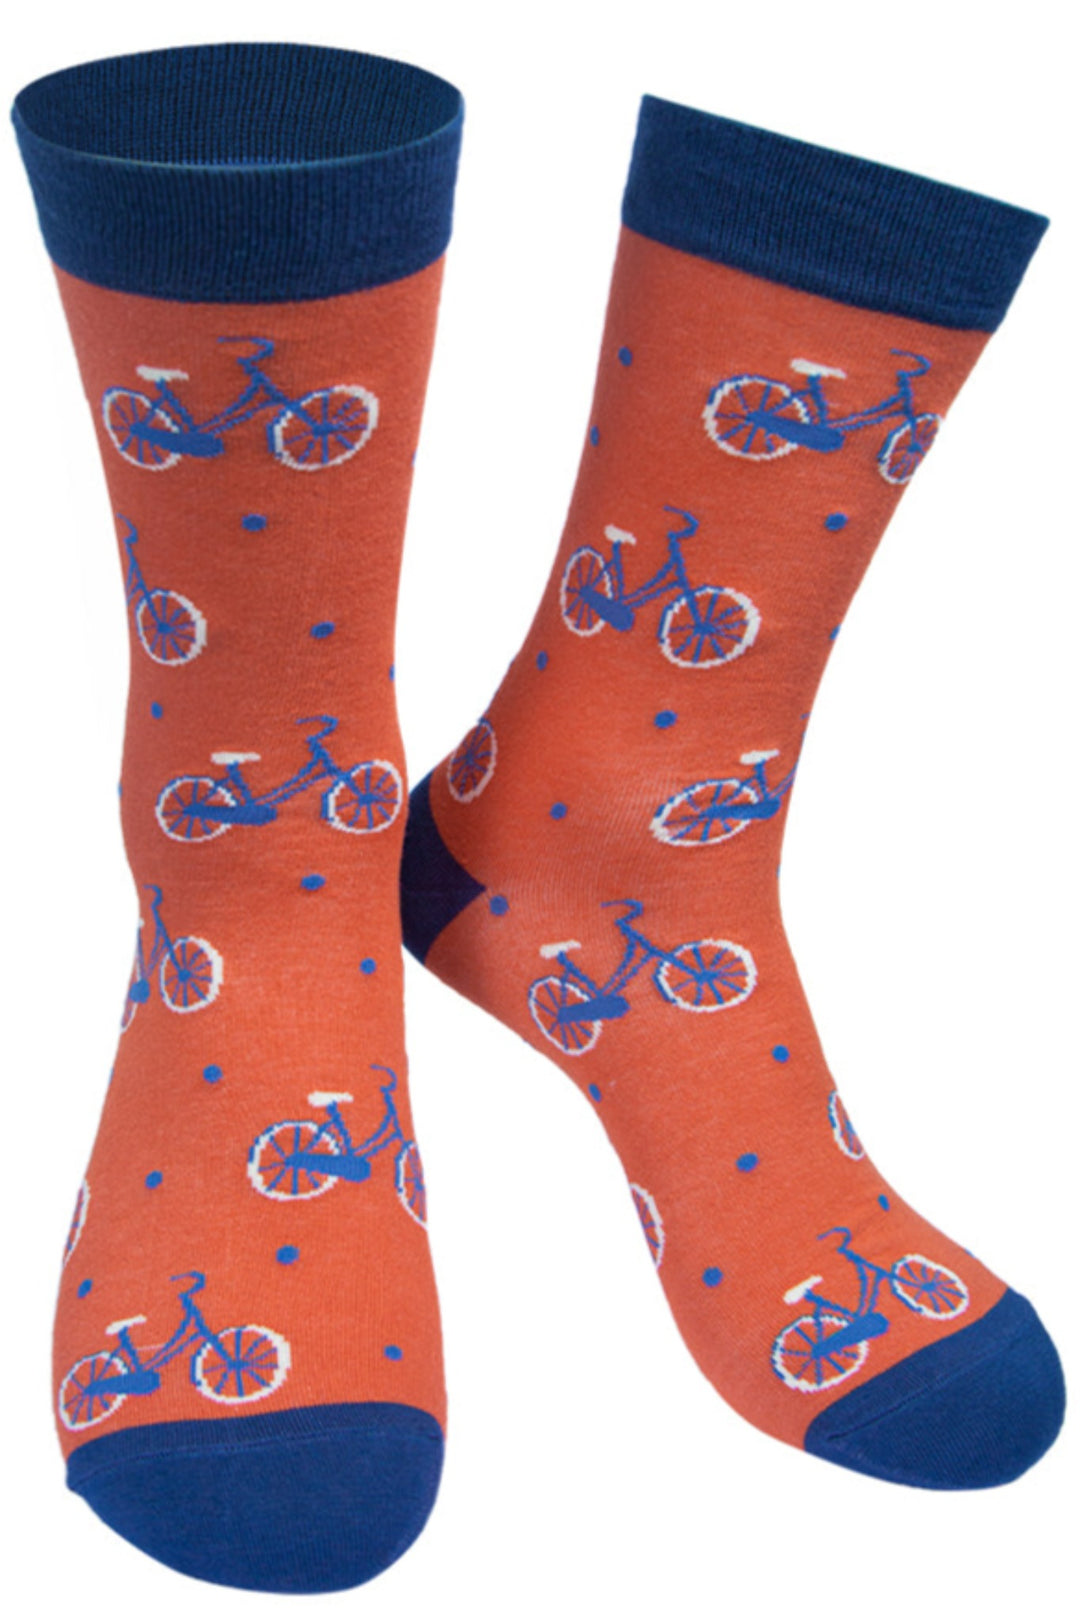 Mens Bamboo Cycling Socks Bicycle Print Novelty Sock Orange